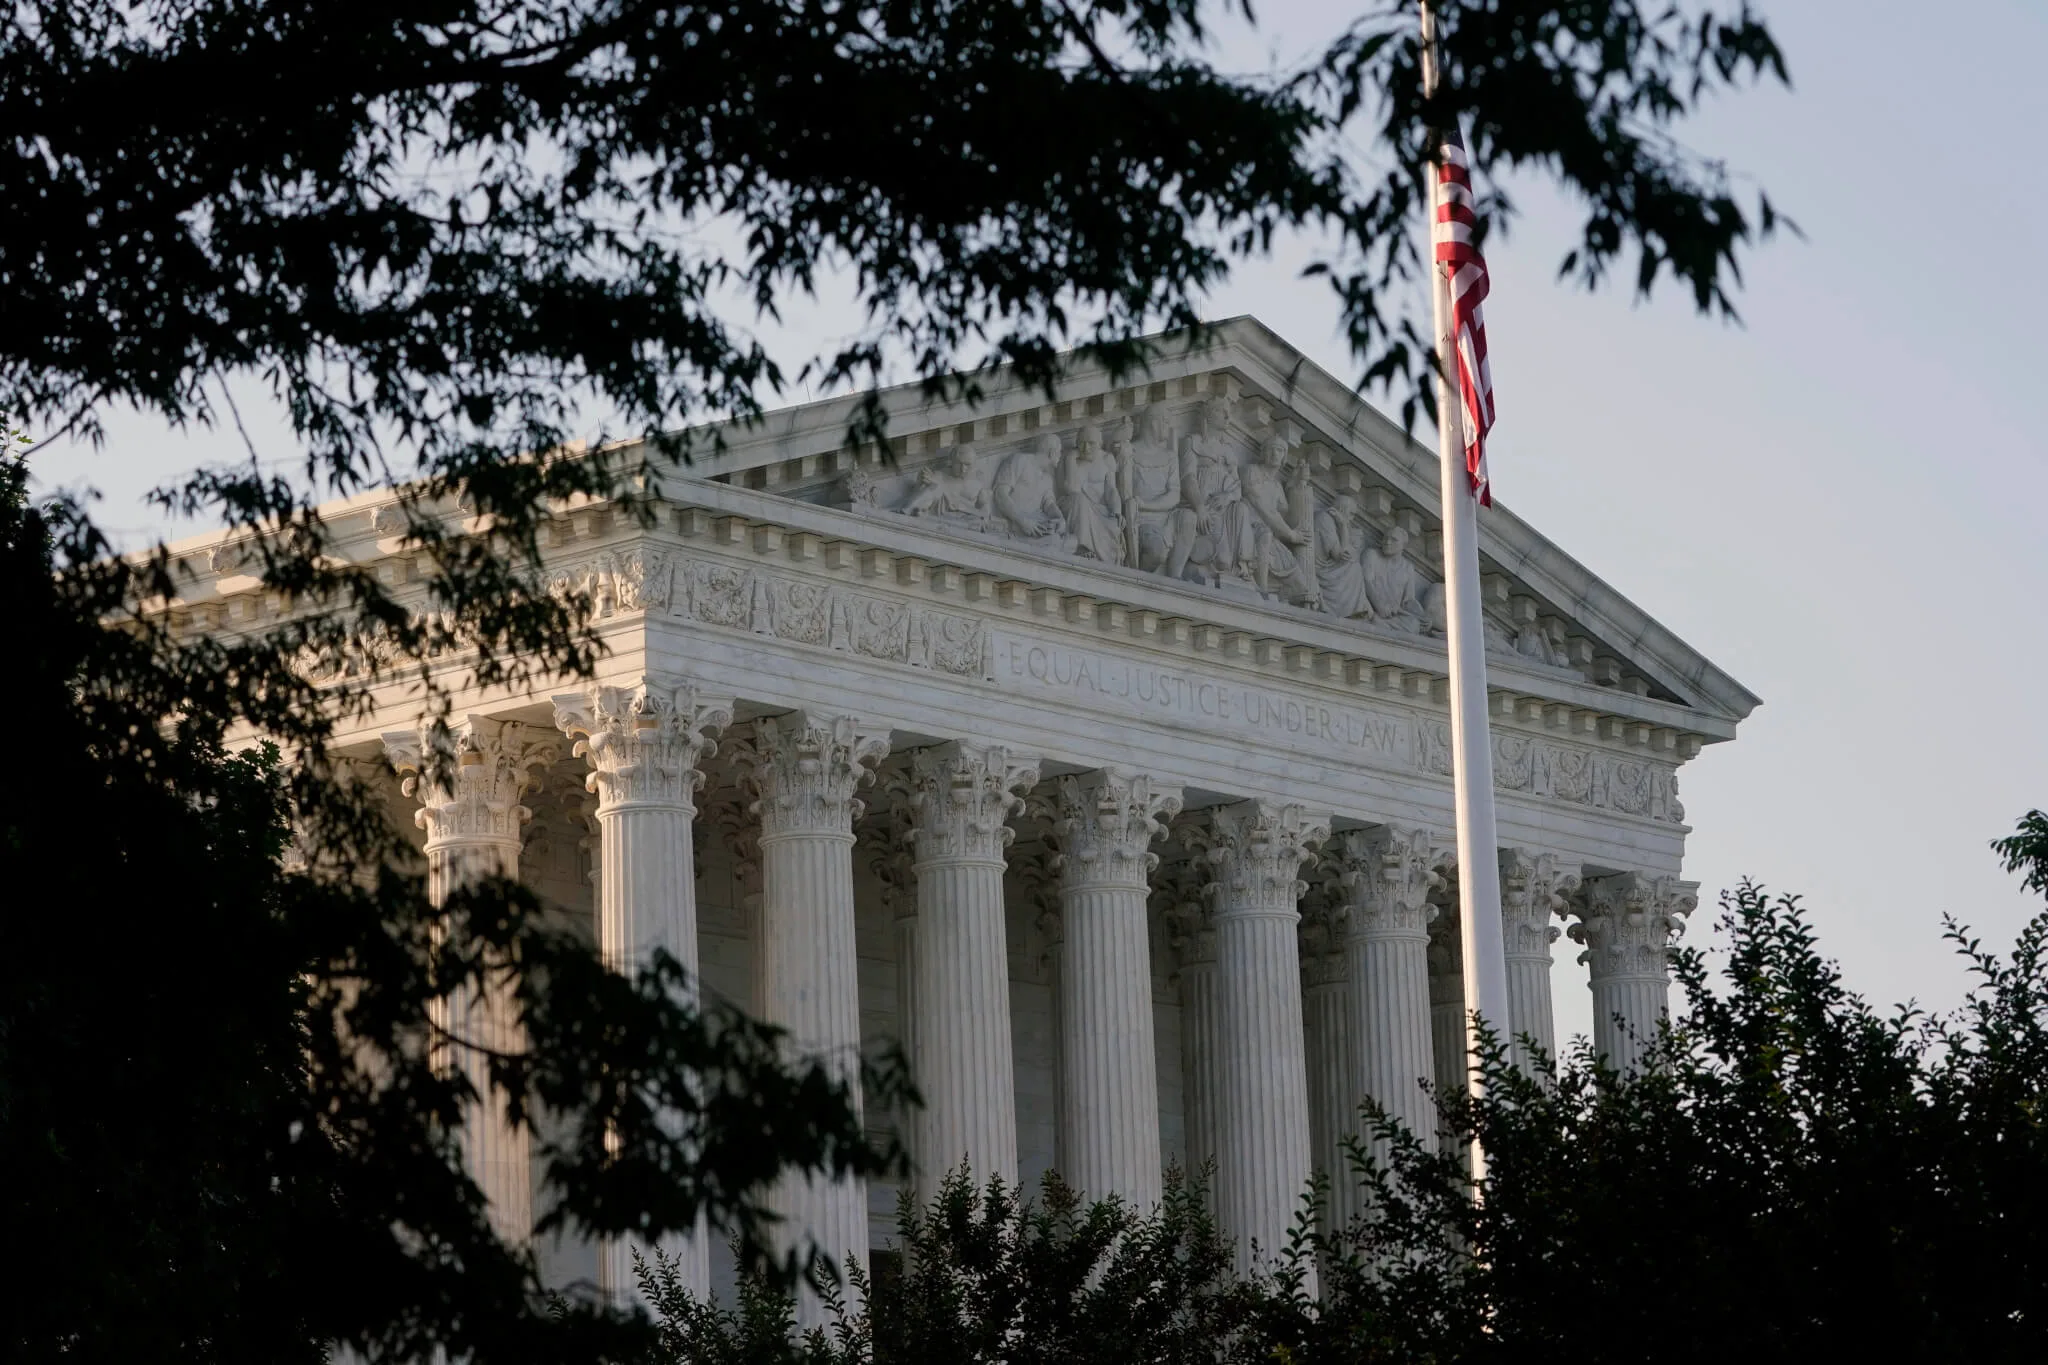 La Corte Suprema